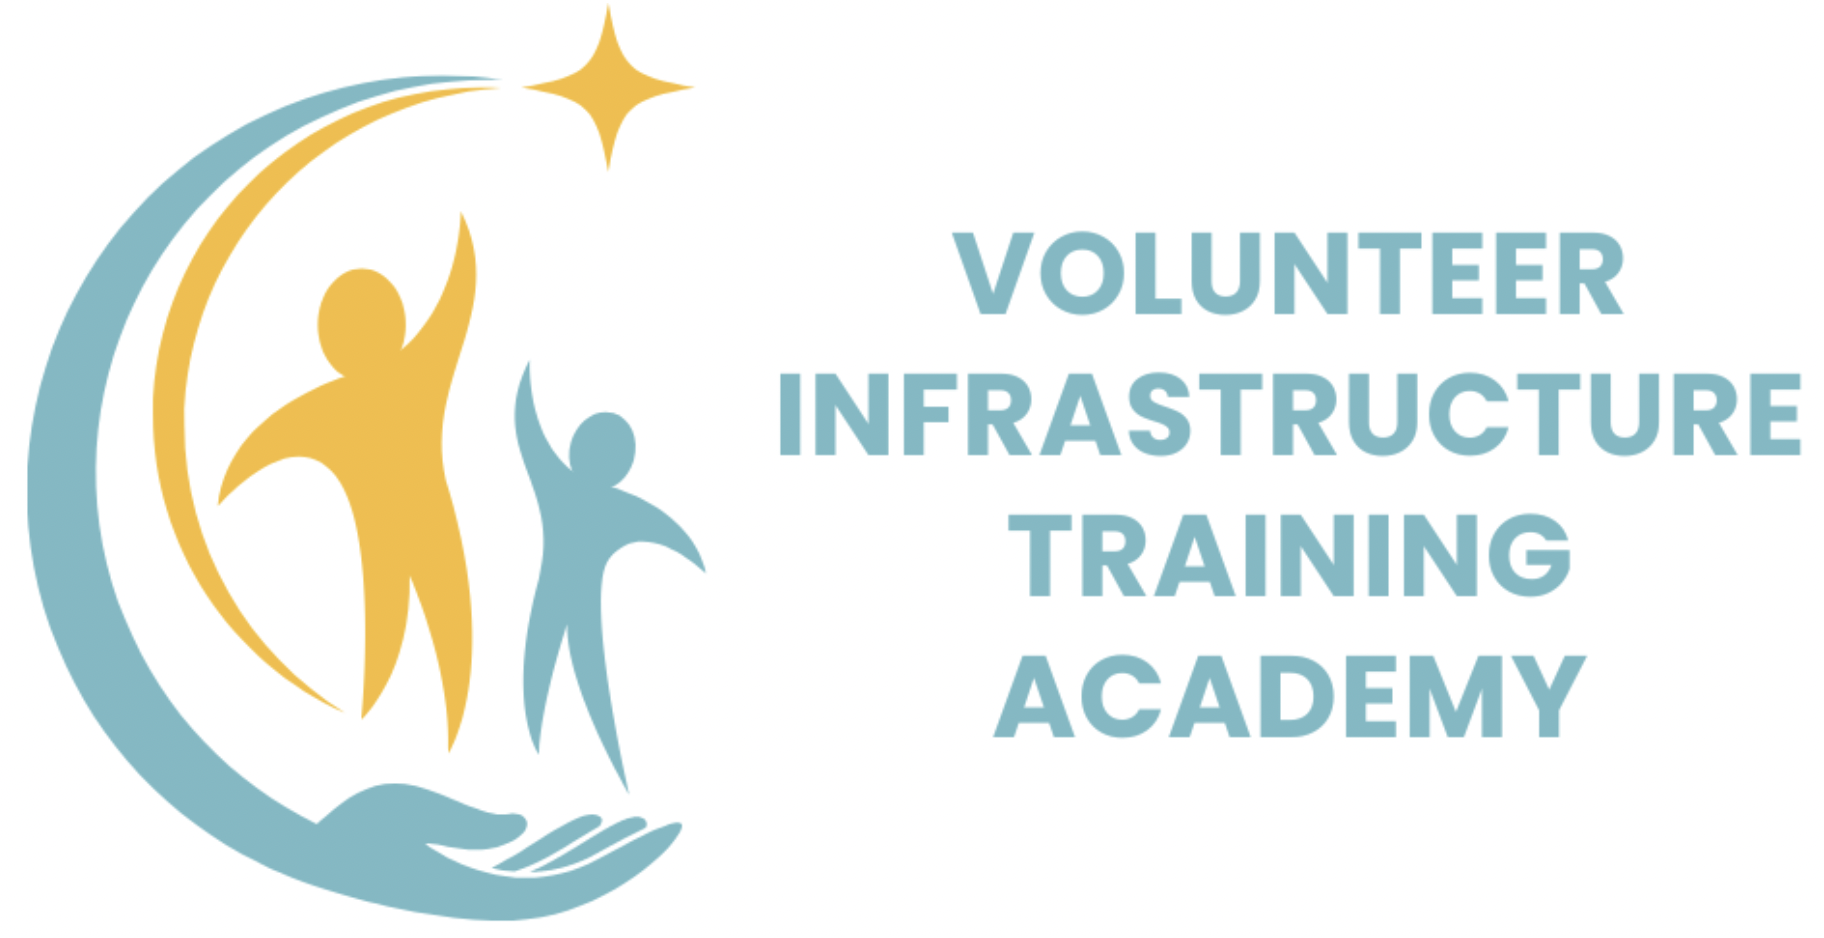 Volunteer Infrastructure Training Academy